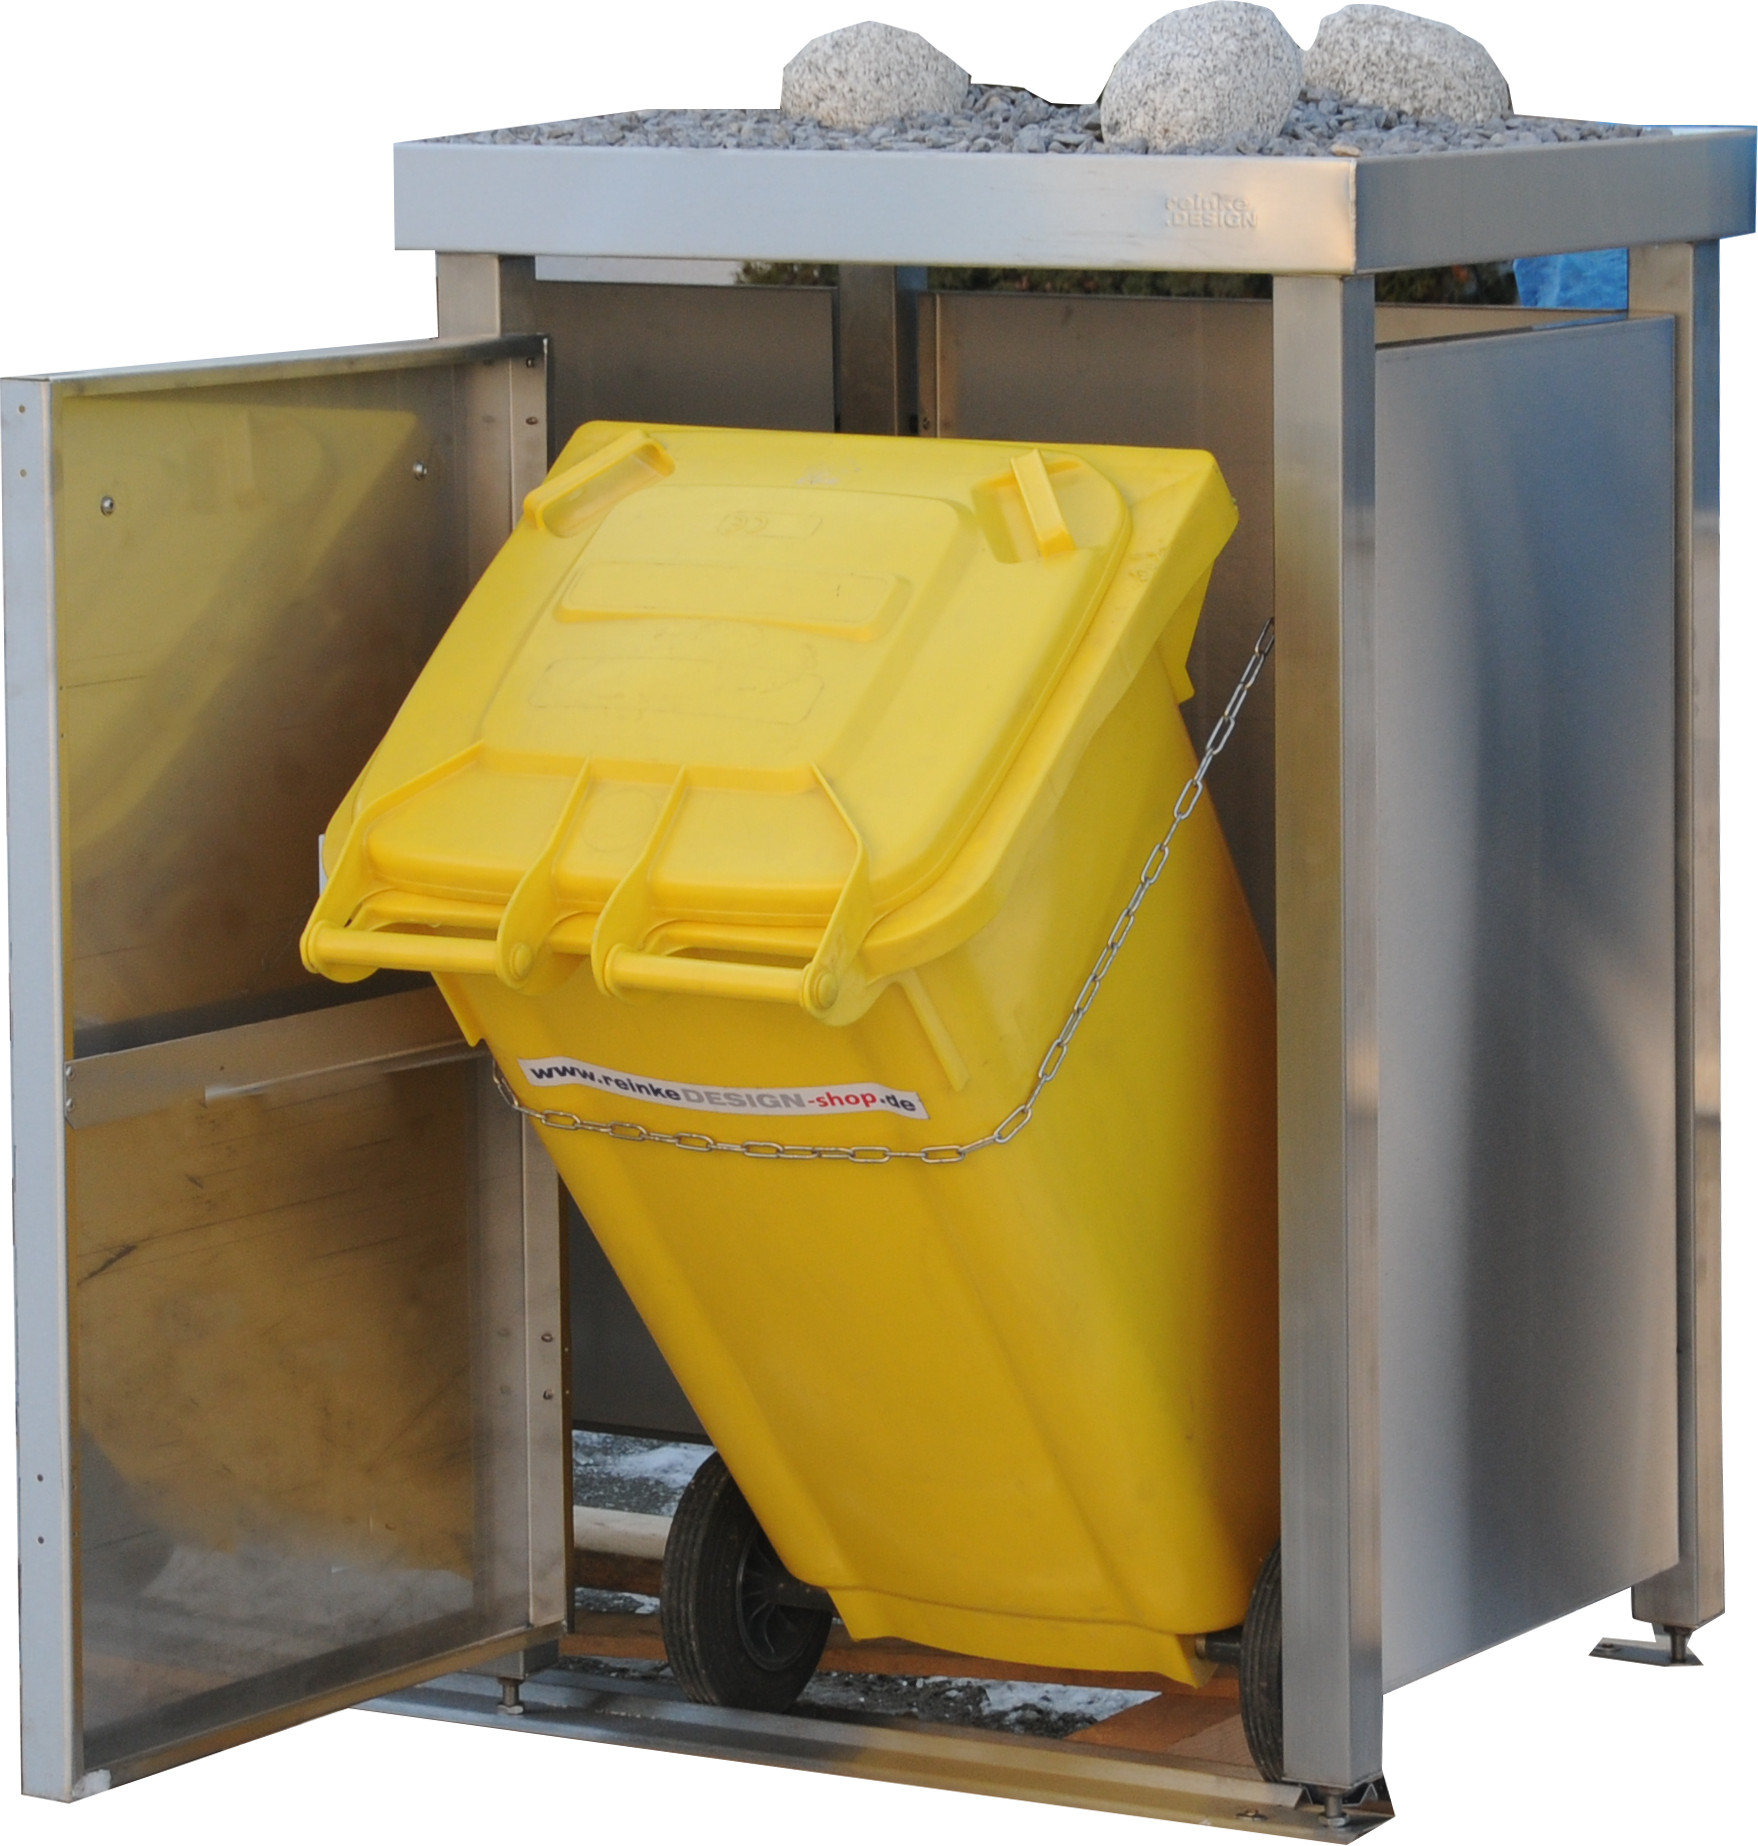 Mülltonnenbox Typ-MW, 2x 240l + 2x 120l, Türfarbe Edelstahl